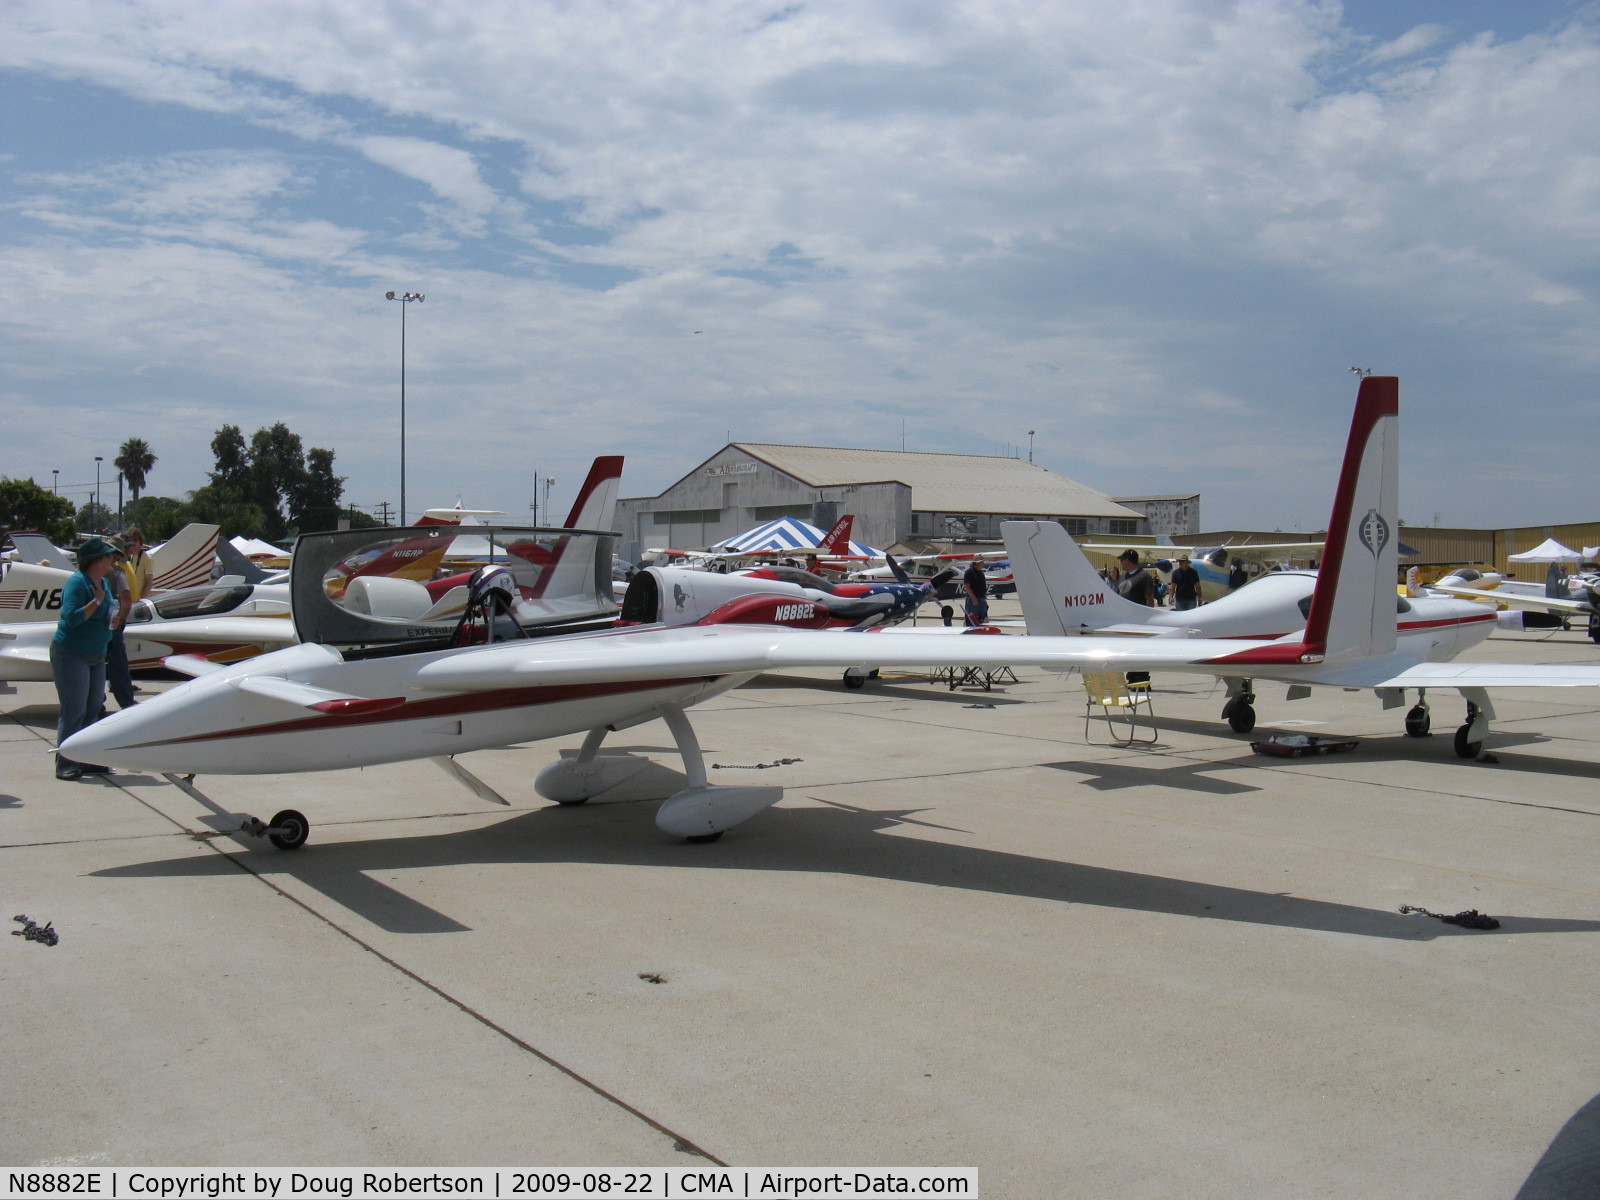 N8882E, 2008 Rutan Long-EZ C/N 001 (N8882E), 2008 Randall RED DEVIL canard , Lycoming O-320-E2D 150 Hp